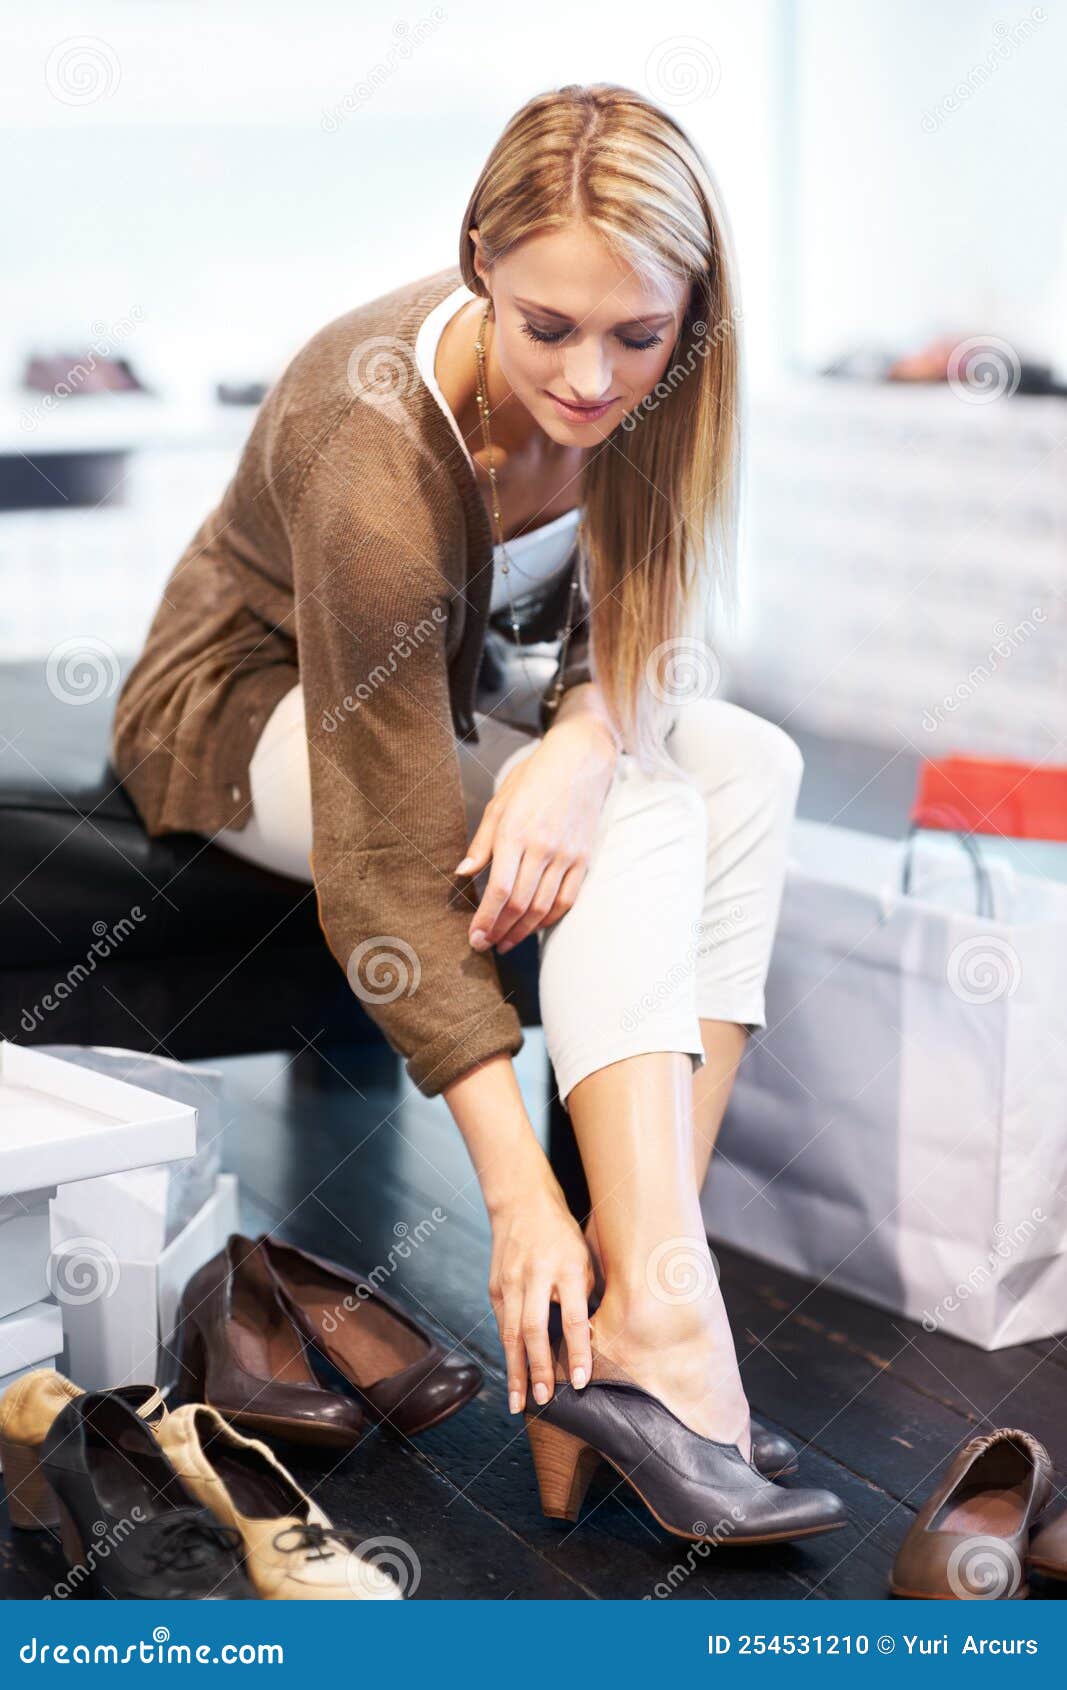 Tienda De Moda De Venta De Zapatos Y Tienda De Ropa Para Mujeres Compra Prueba De Tacones Elegantes Y De En Tienda Minor Foto de archivo - Imagen de talones, manera: 254531210